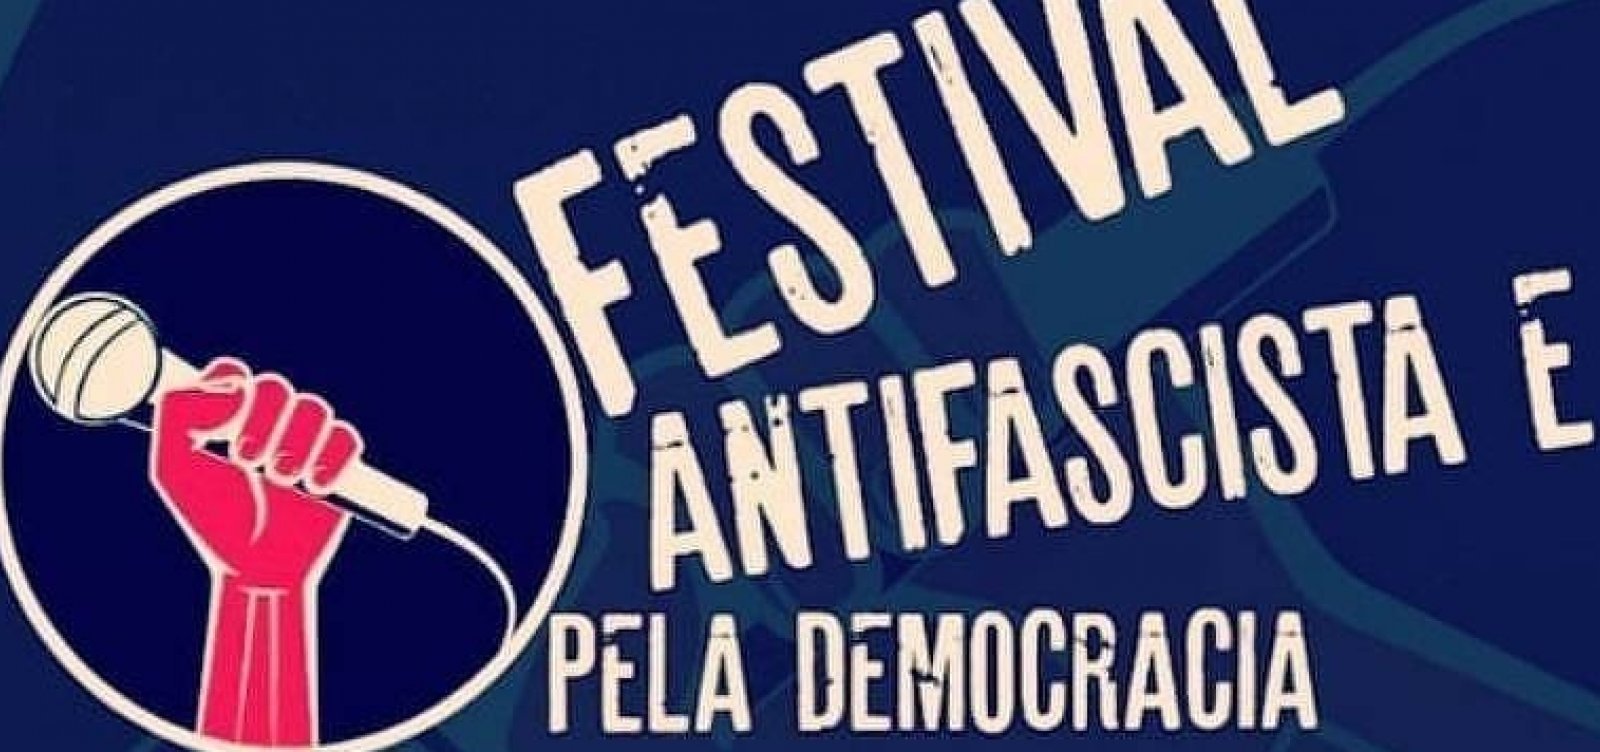 Festival de jazz antifascista é aprovado após vetos do governo Bolsonaro 